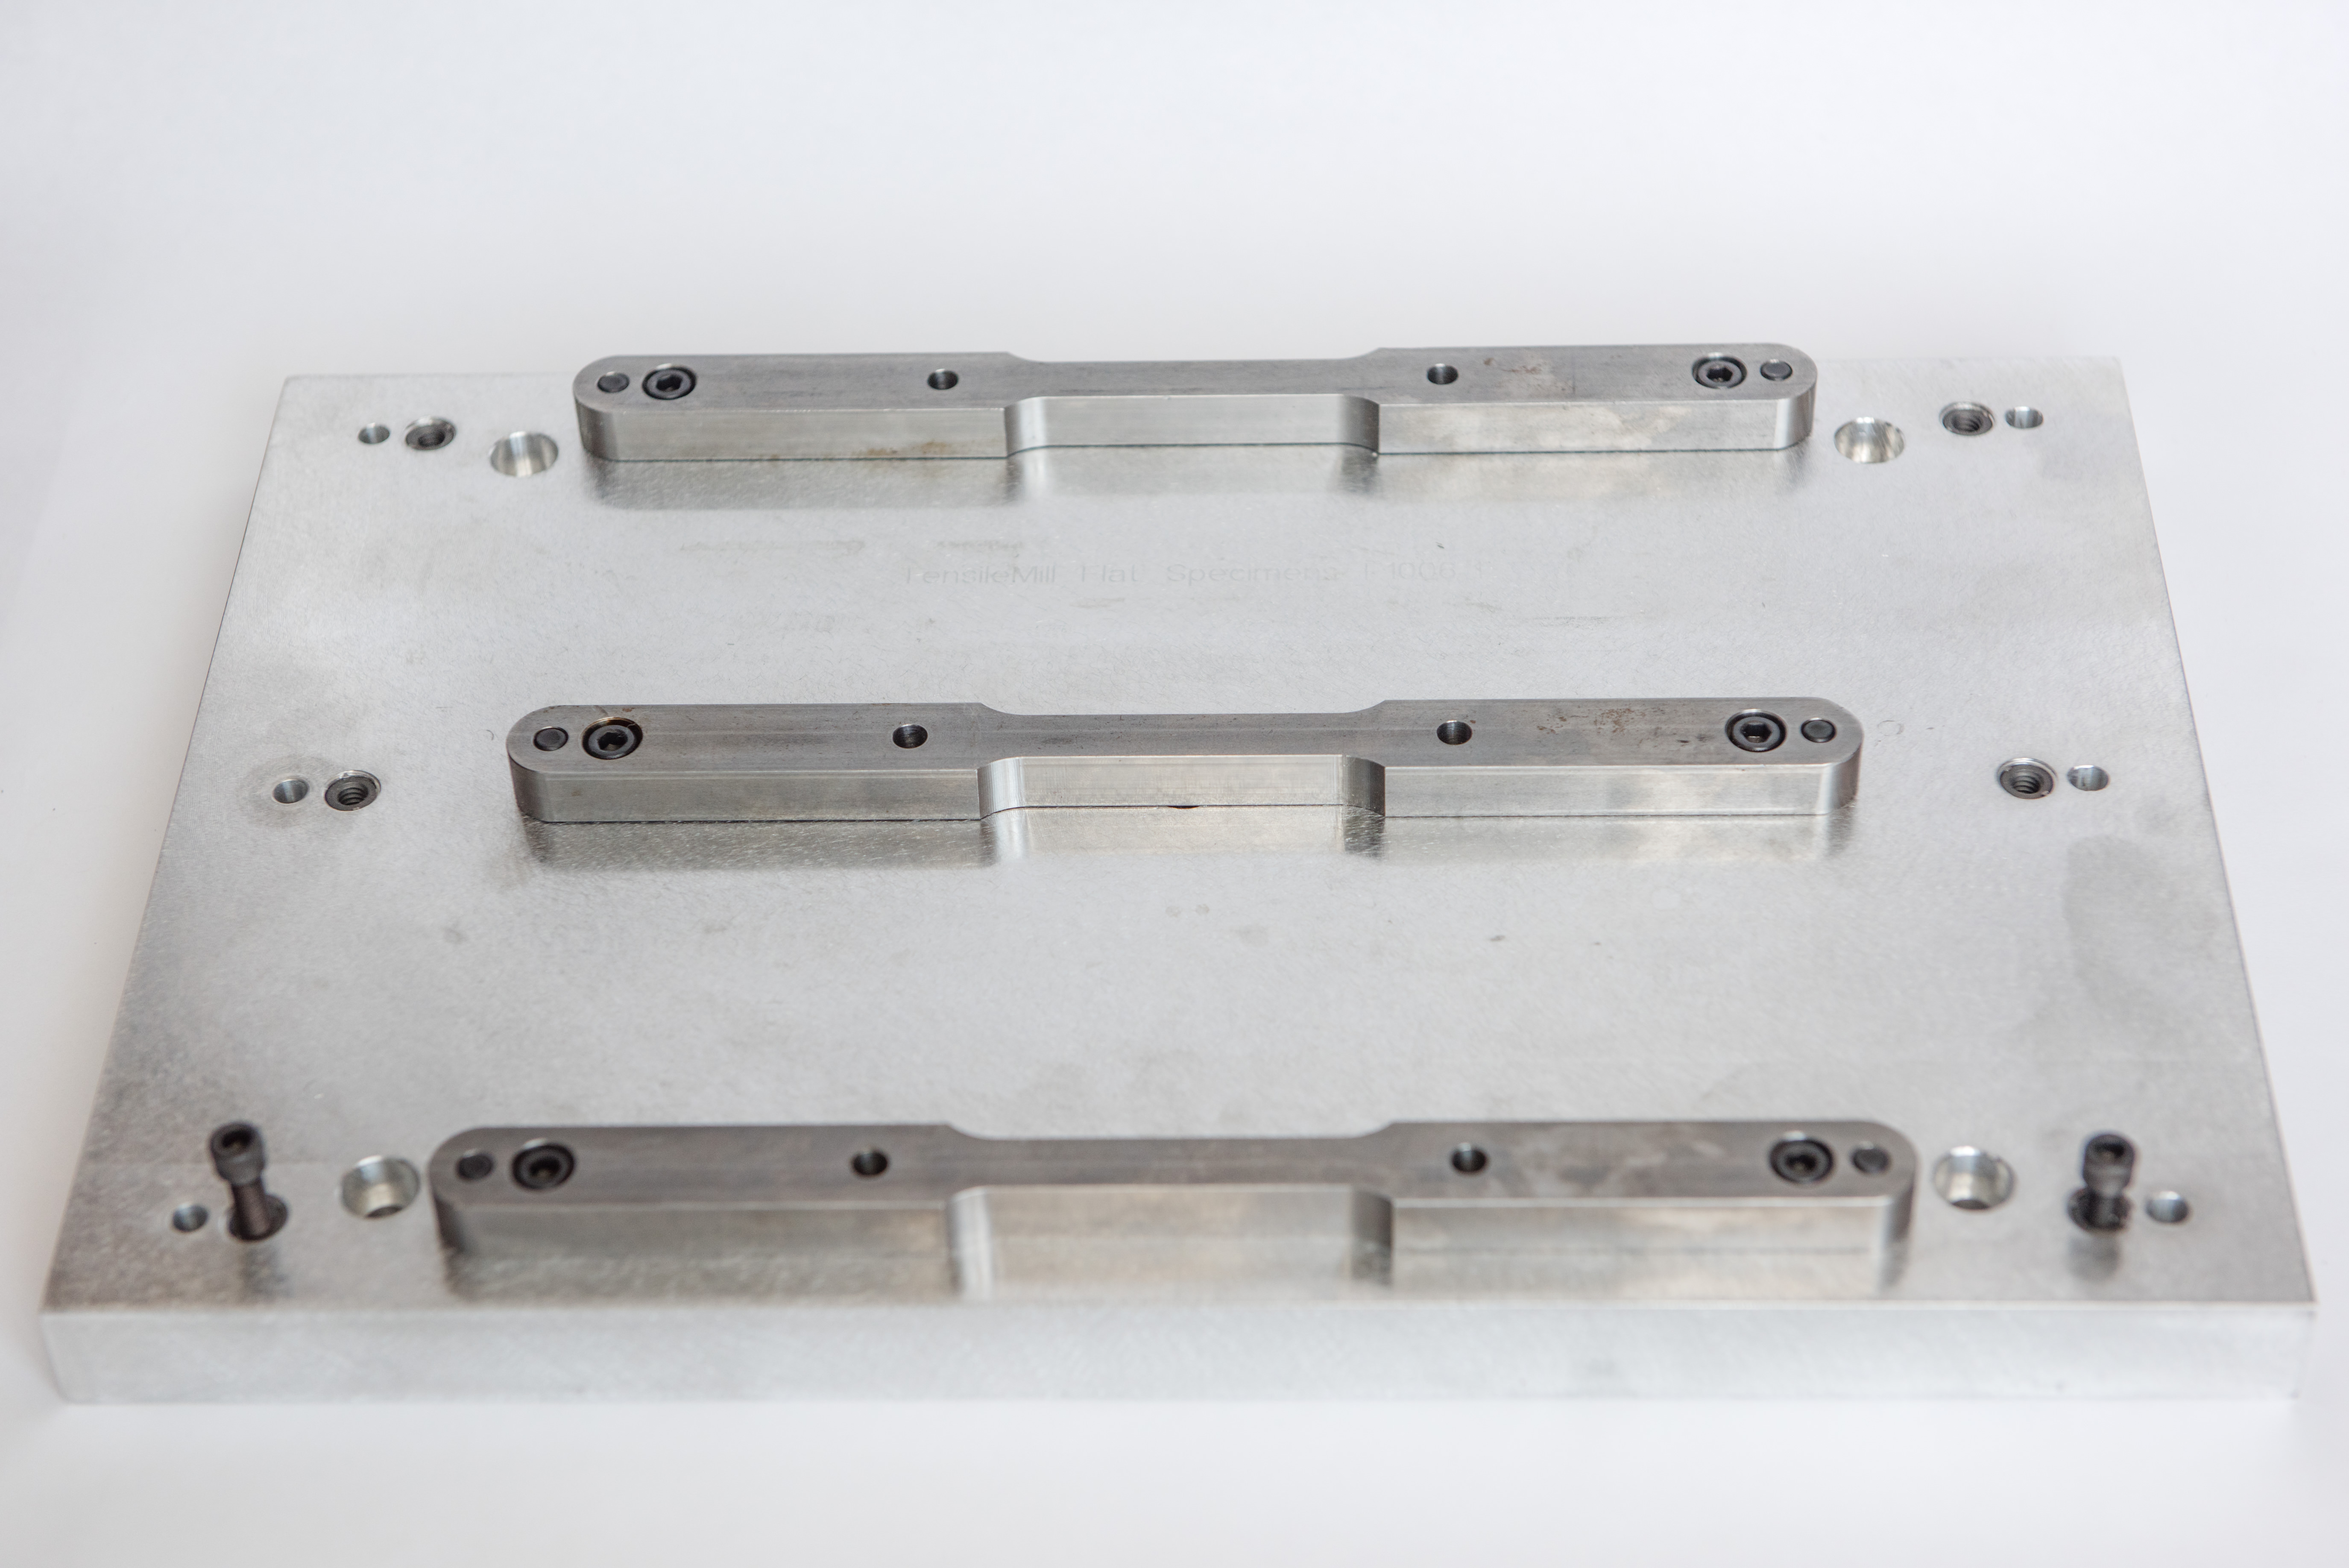 Custom clamping fixture for flat tensile sample preparation system